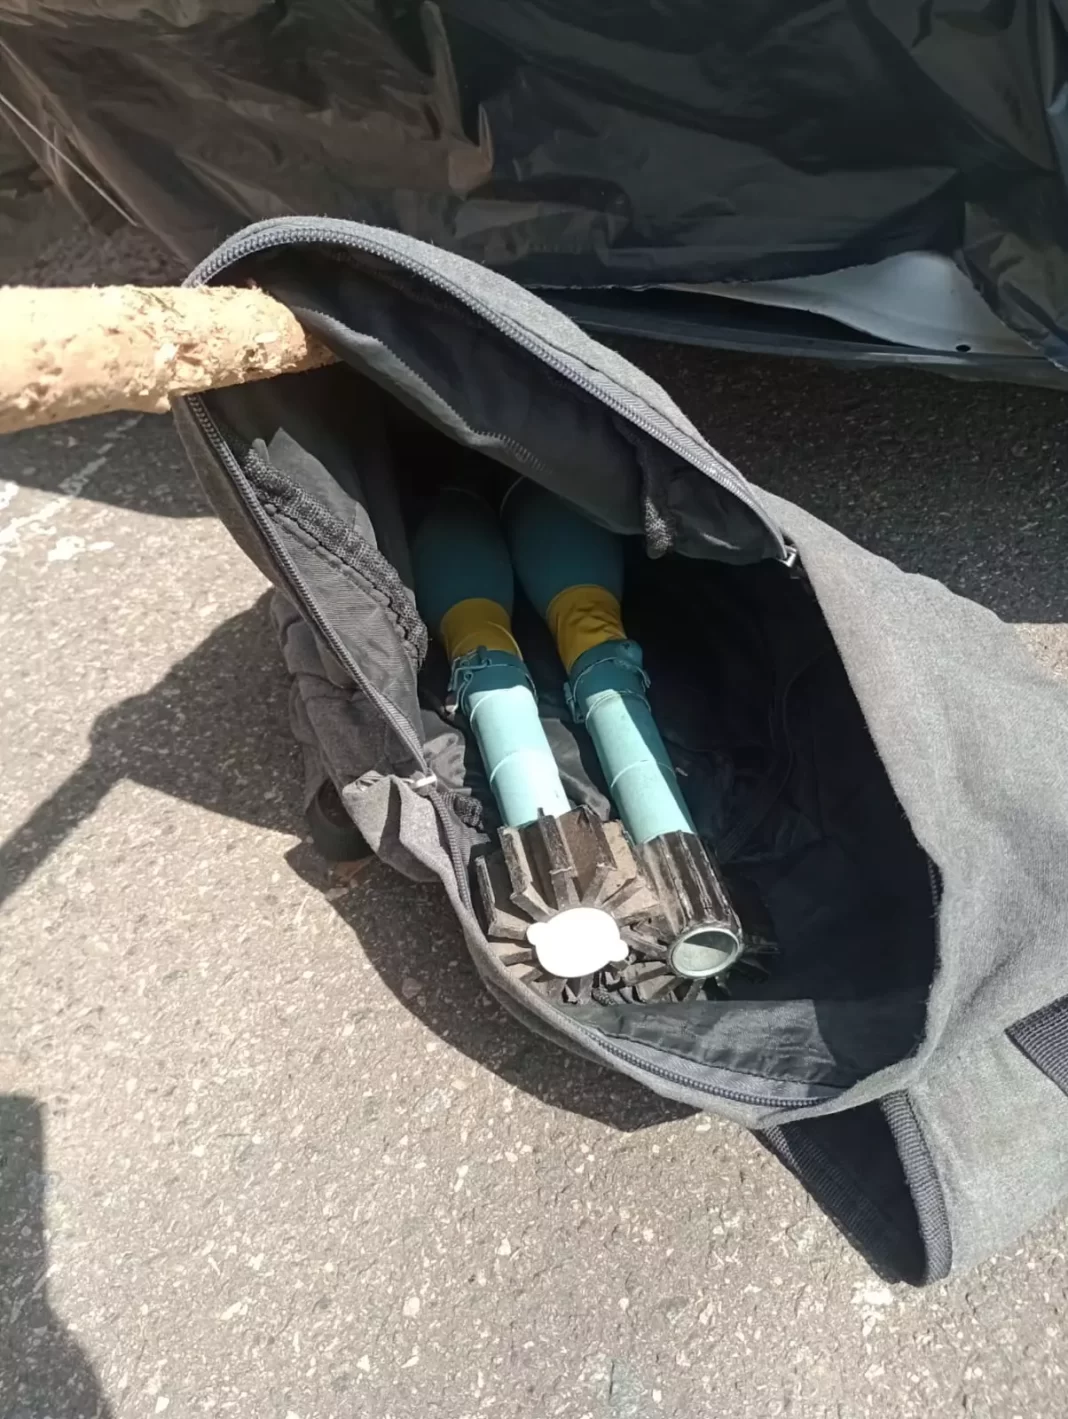 Artefatos explosivos encontrados na região do Jardim São Fernando, em Campinas